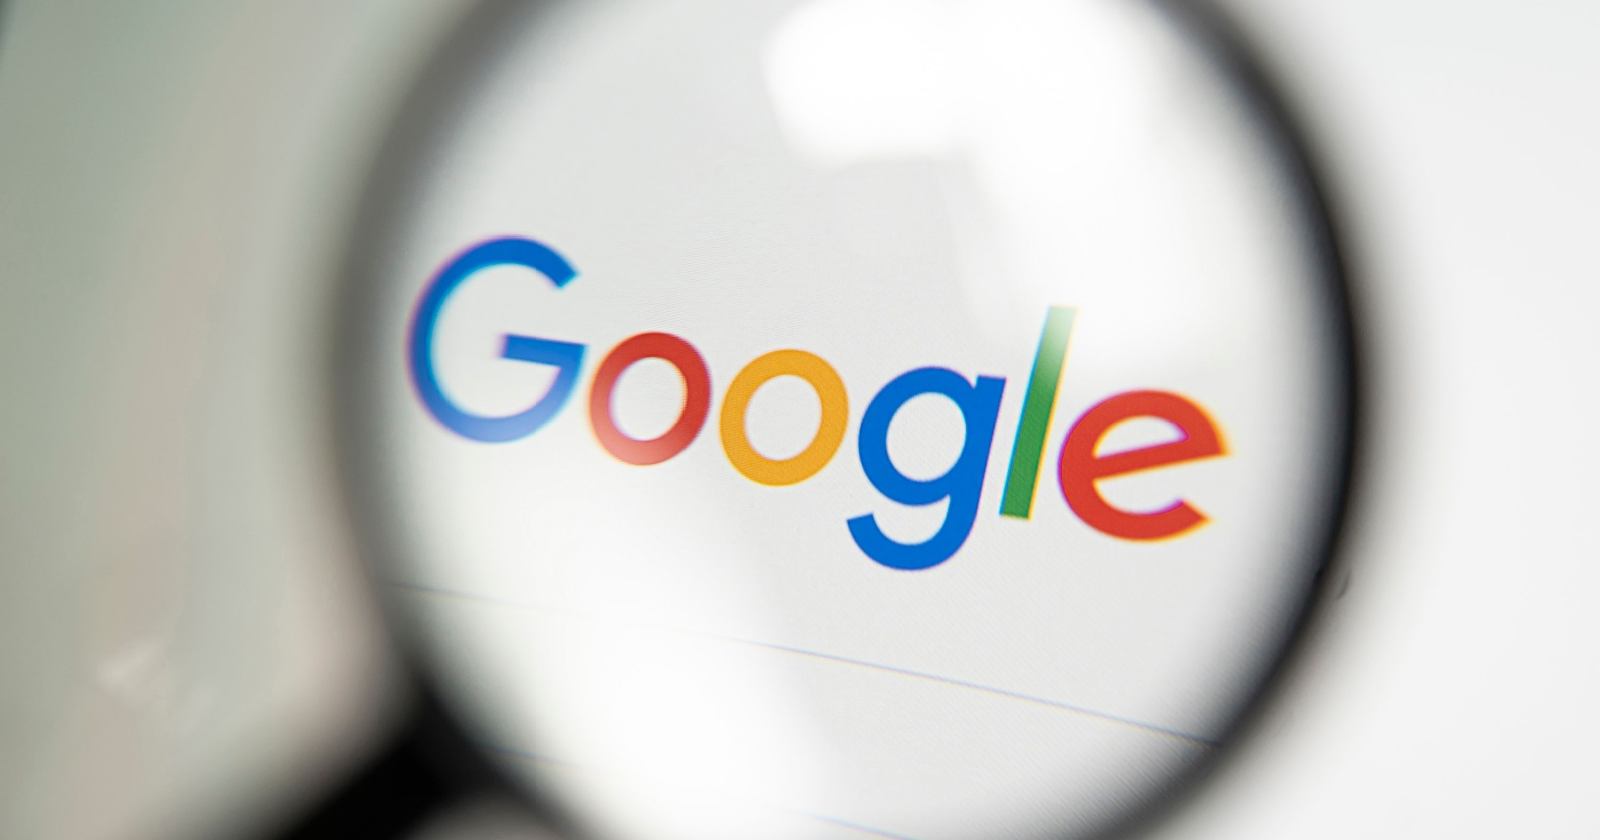 Google skal betale 62 millioner dollars i kompensation for lokationssporing uden samtykke